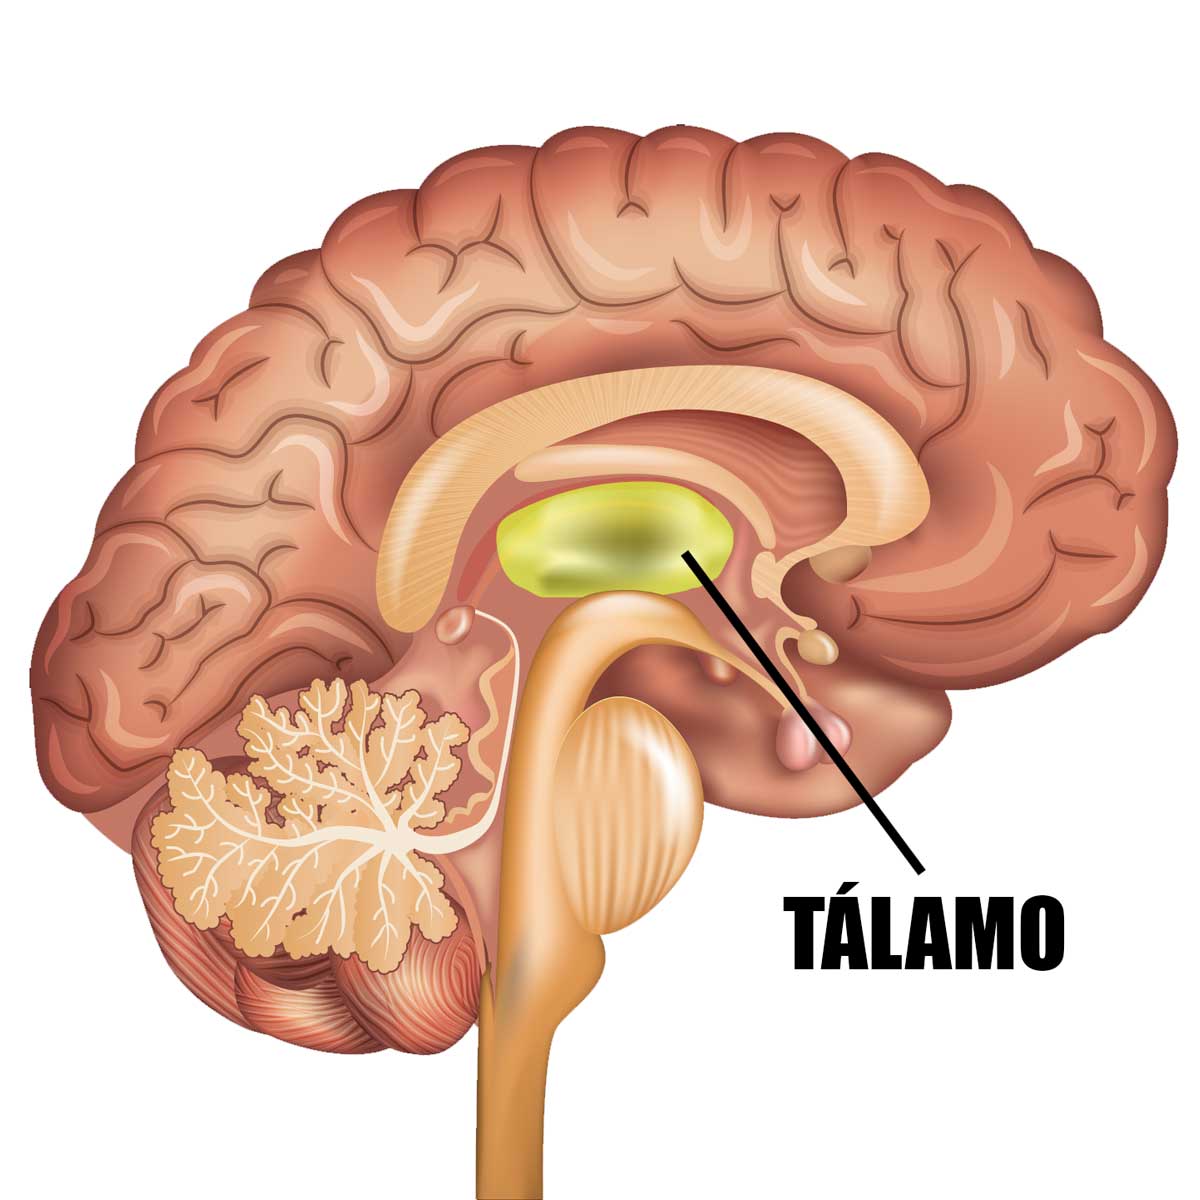 El tálamo, sus funciones, núcleos y trastornos asociados.